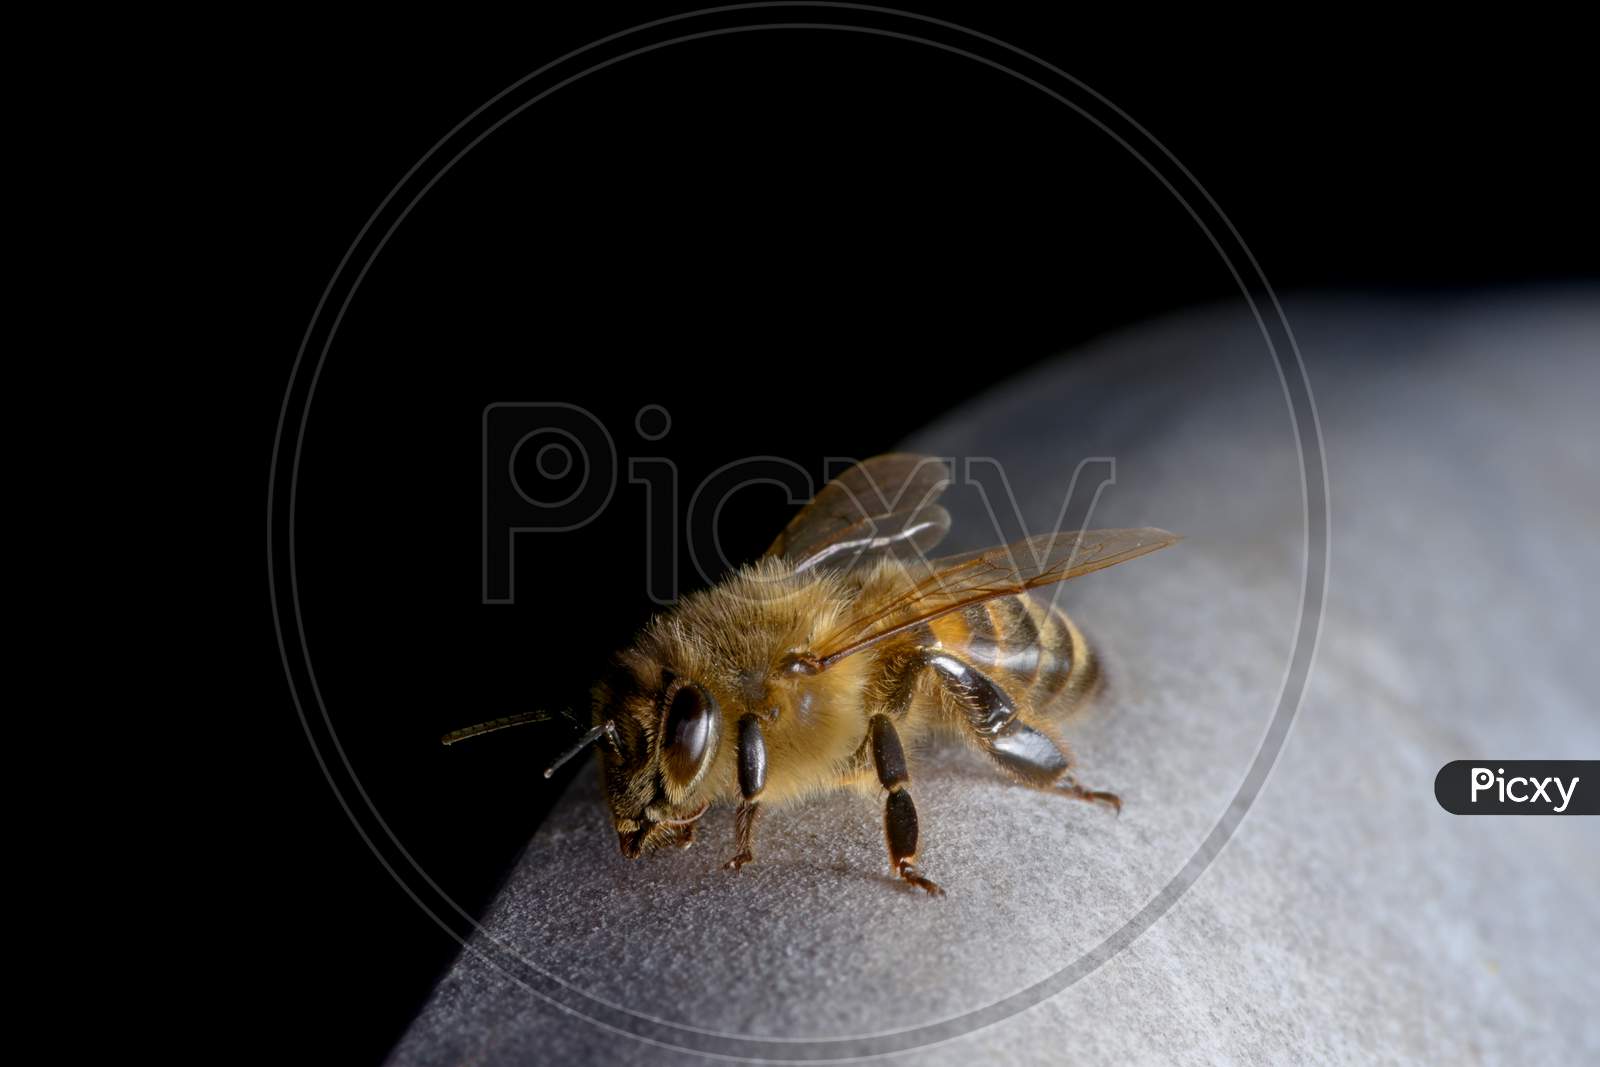 1 - Resting Honeybee